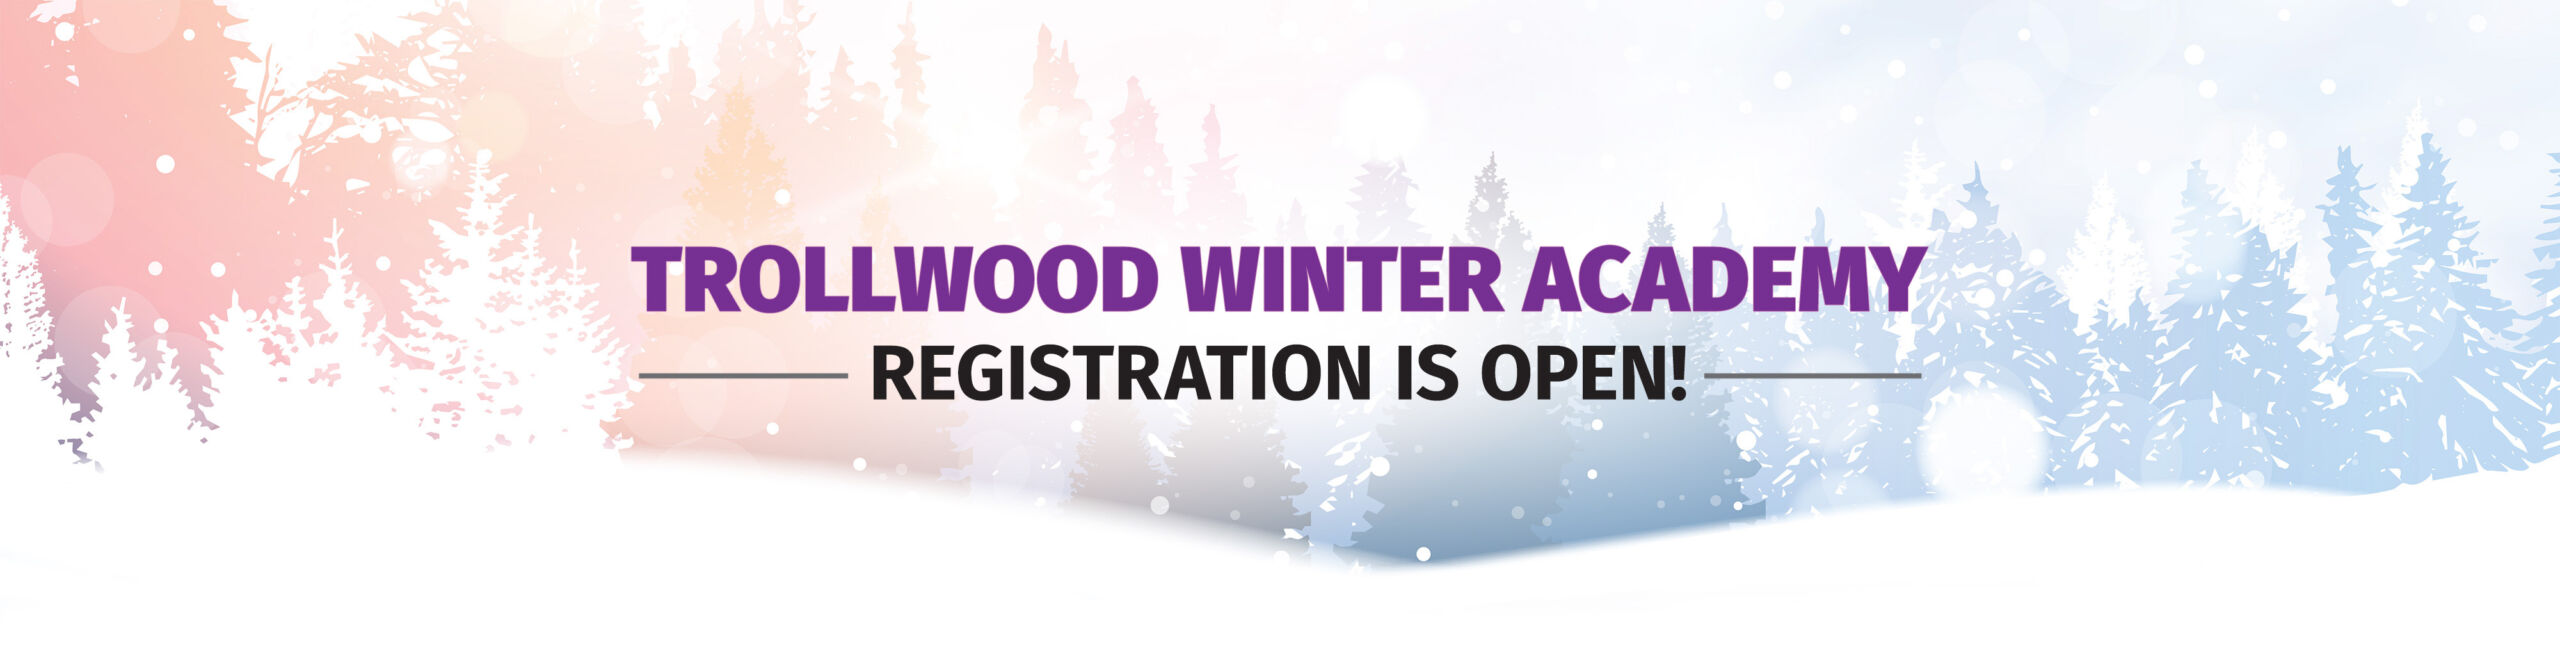 Trollwood Winter Academy Registration is Open